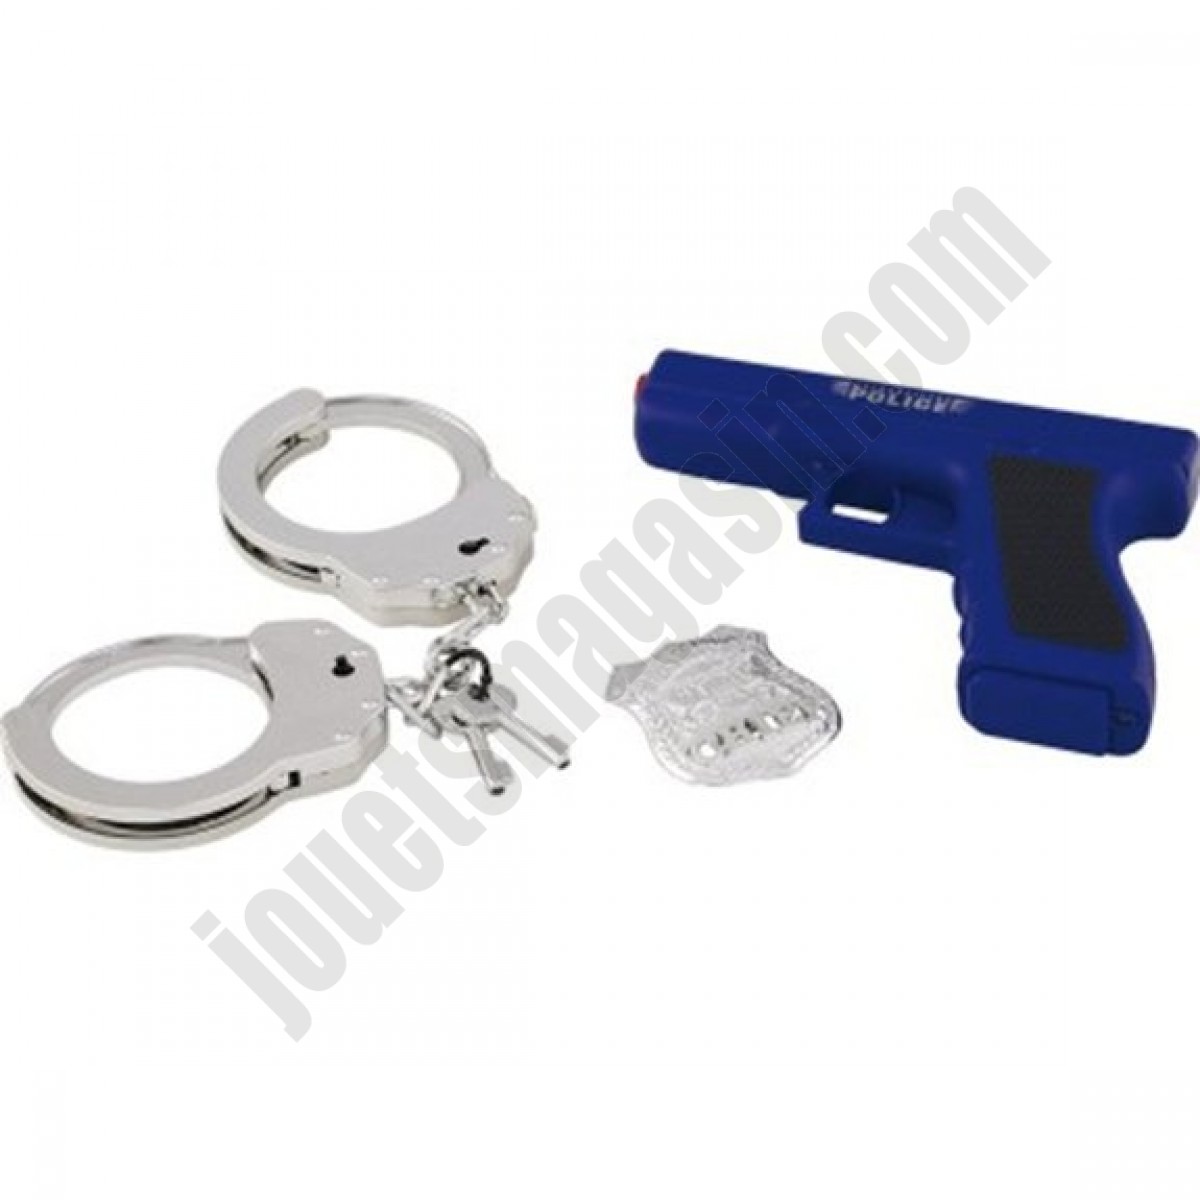 Pistolet et accessoires police - déstockage - Pistolet et accessoires police - déstockage